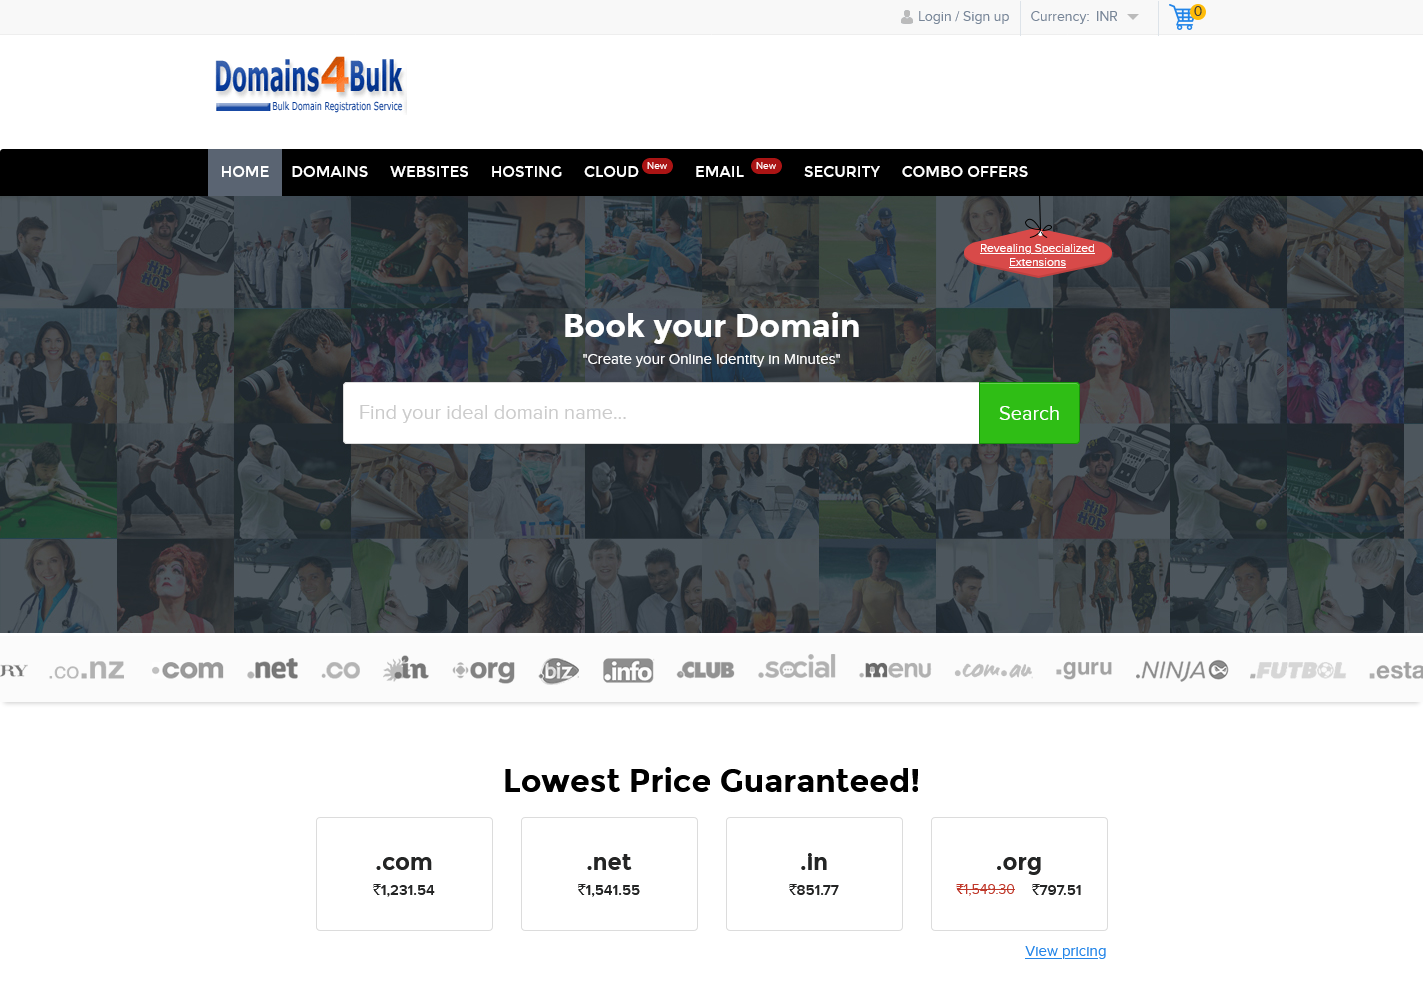 Domains4bulk.com